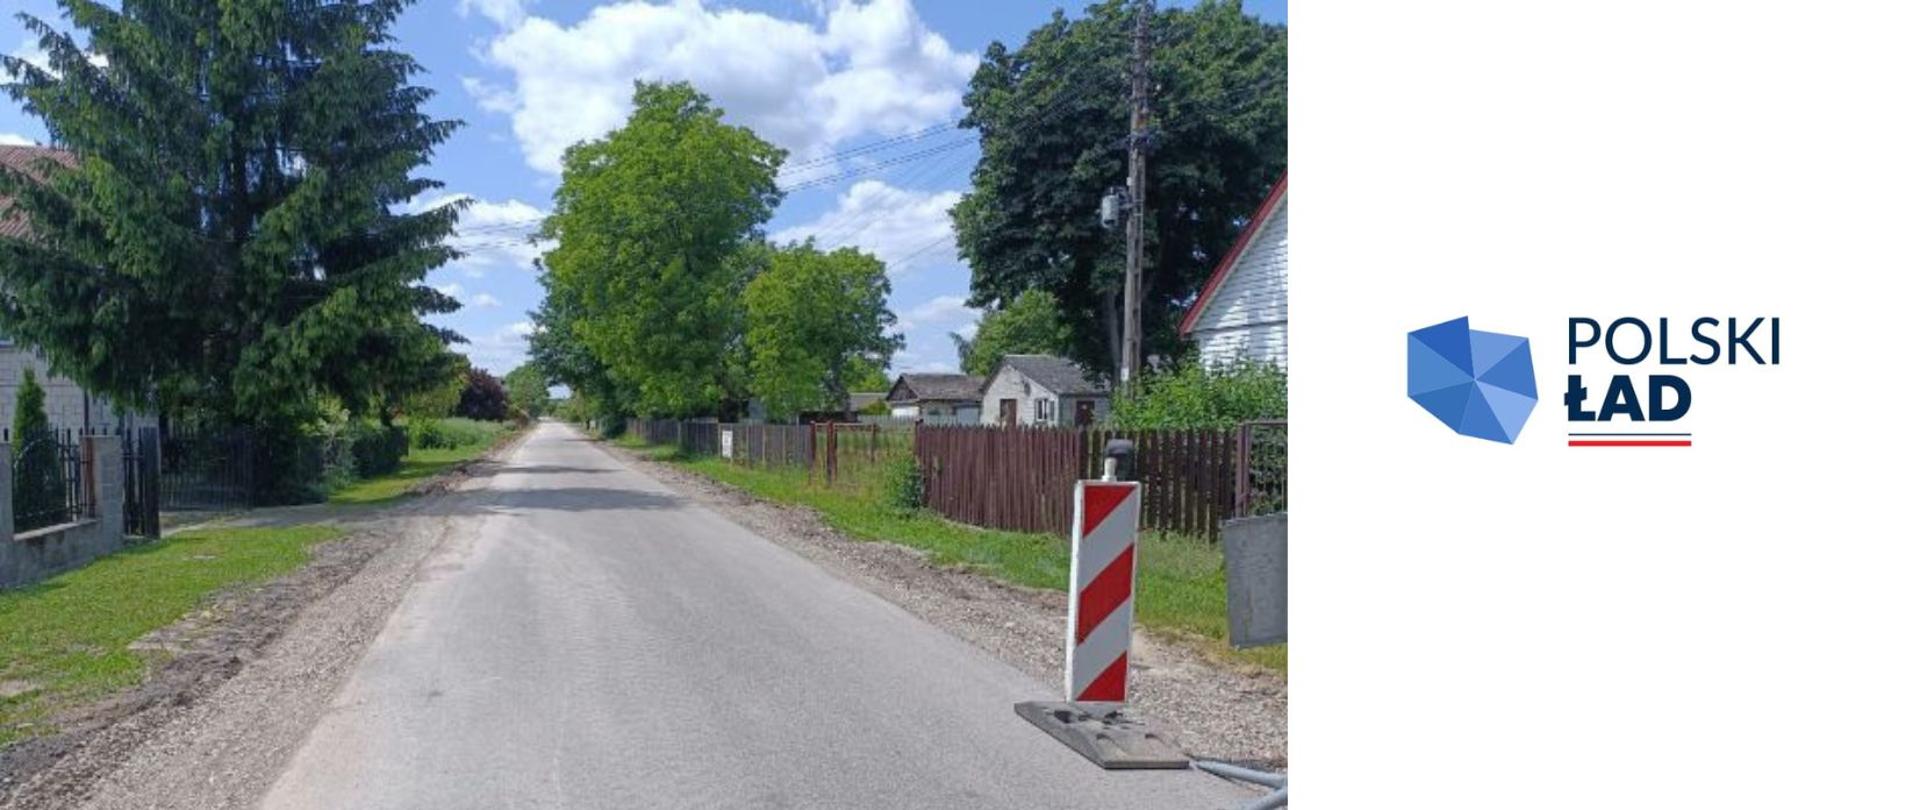 Zdjęcie przedstawiające obecny etap prac remontowych drogi. Po prawej stronie logo Rządowego Funduszu Polski ład na białym tle.